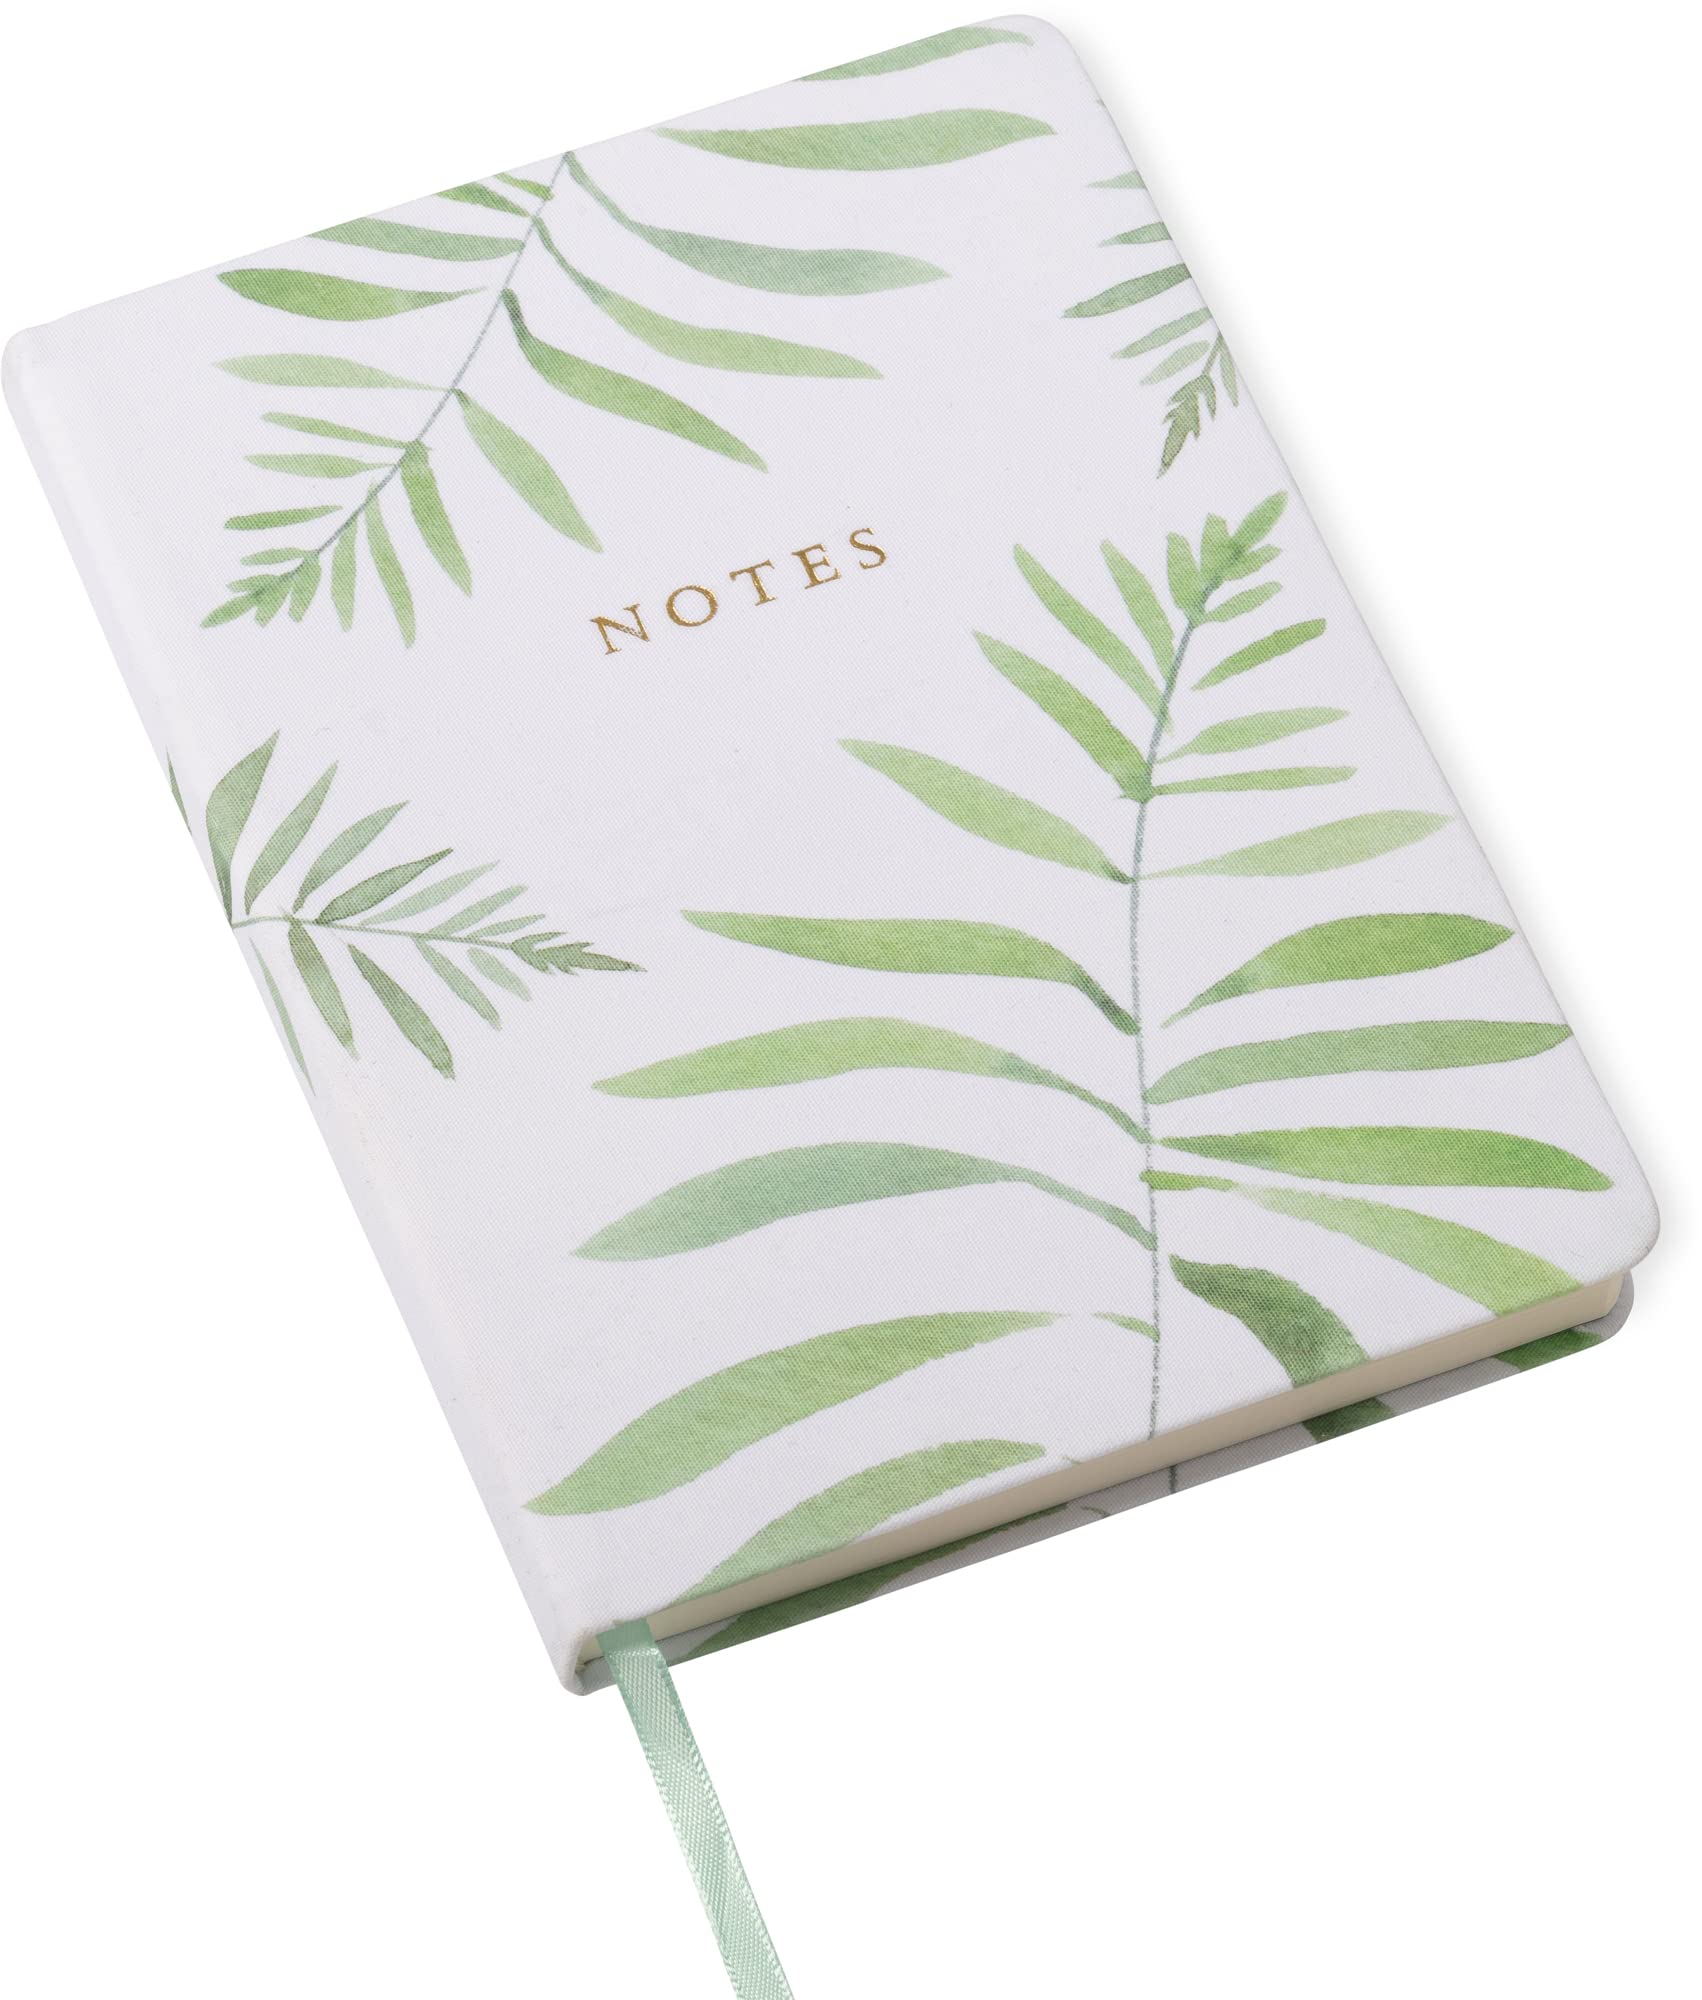 Medium Size Eccolo Notebook with Flexi-Cover